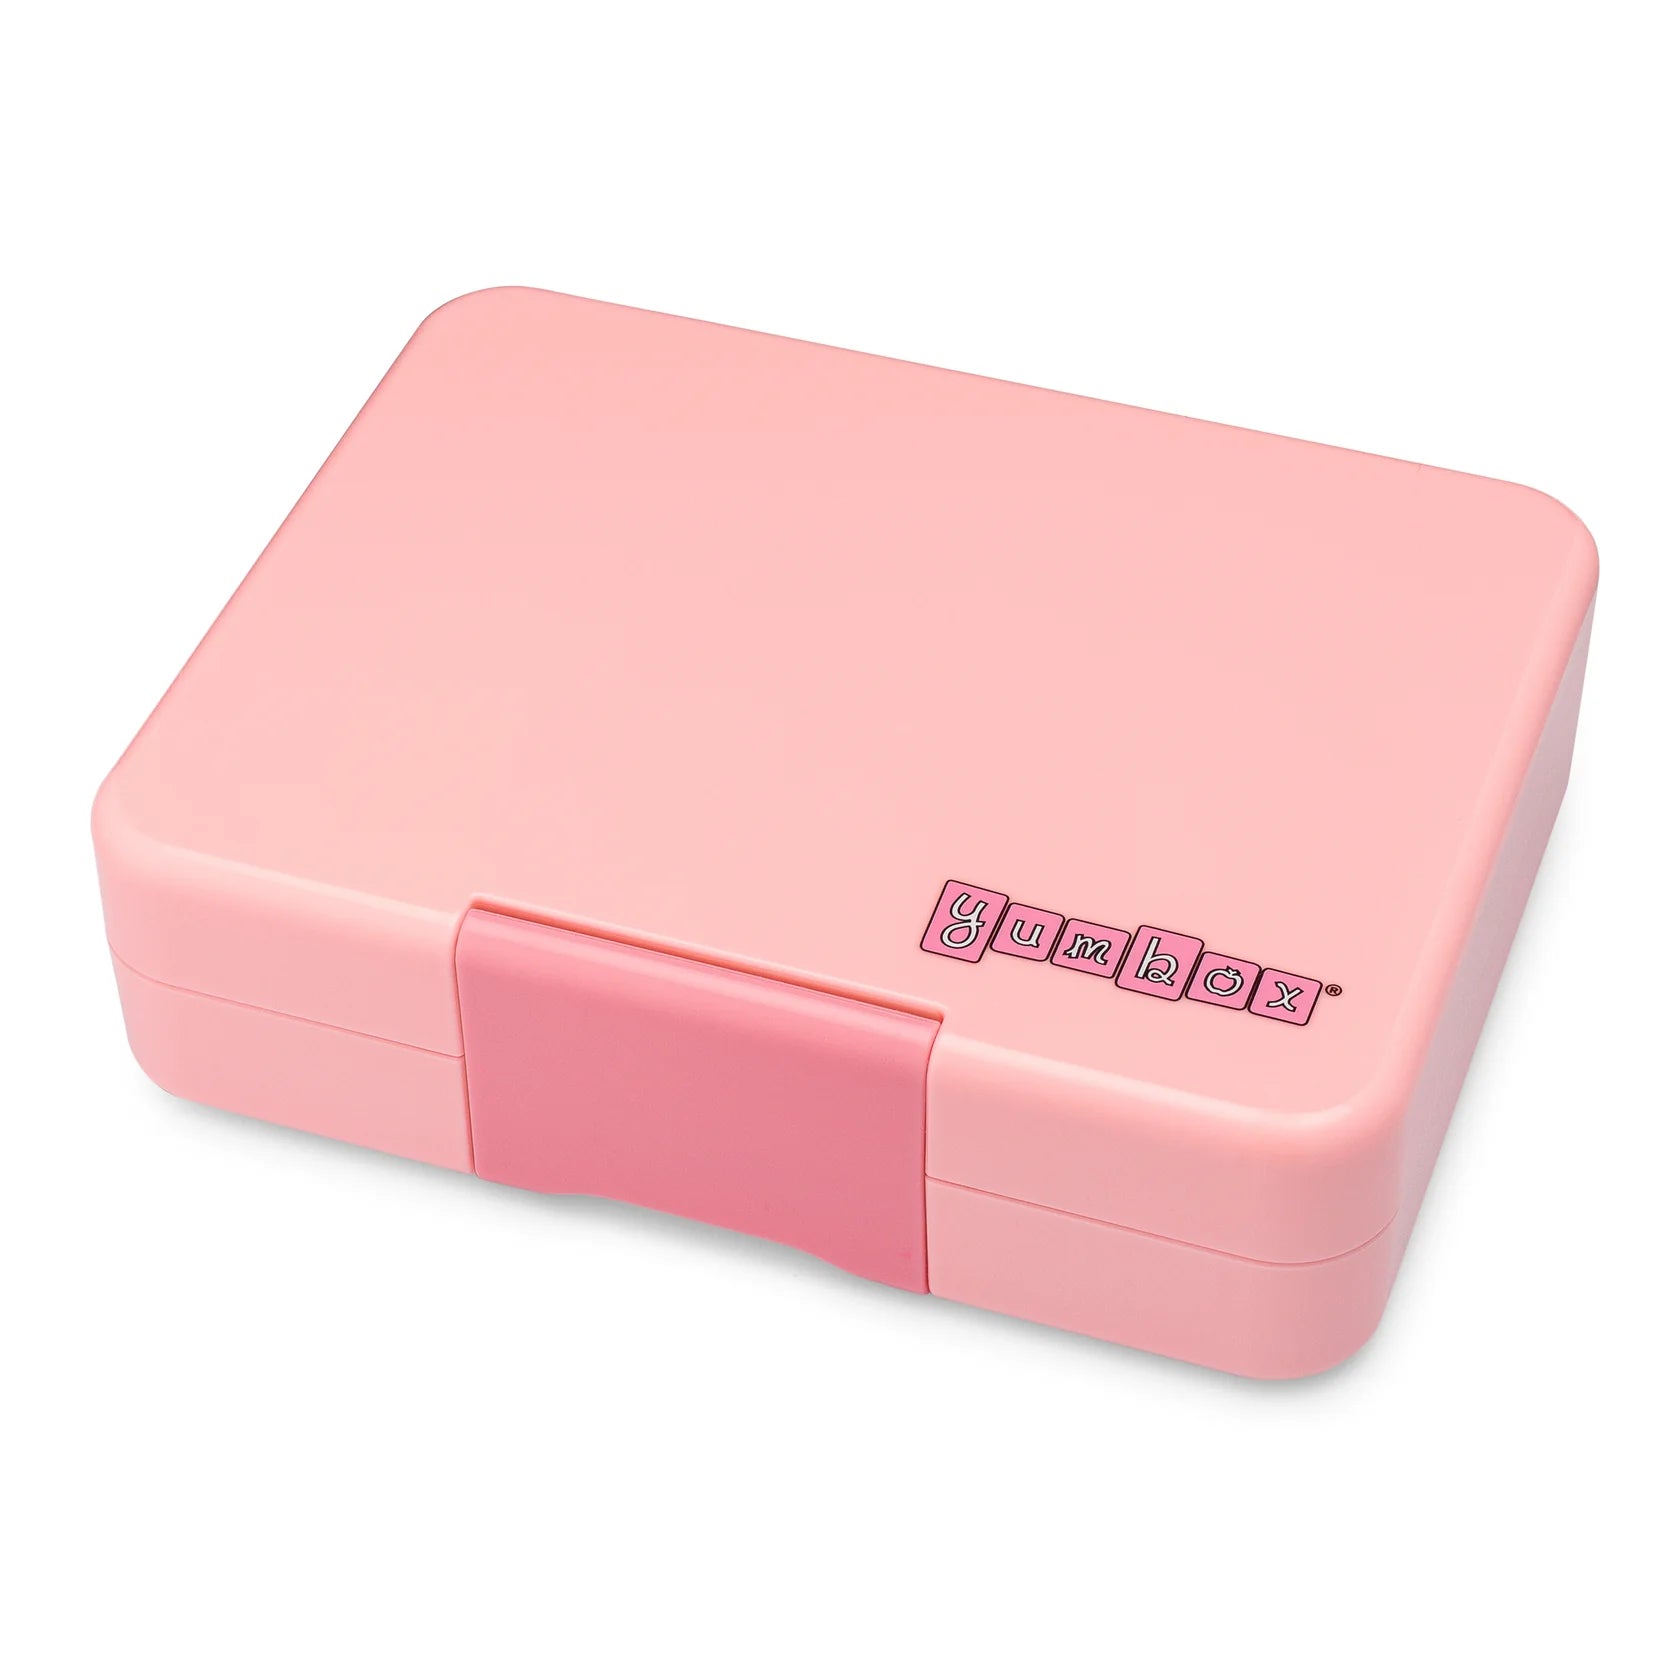 Yumbox Panino 4 Compartment Lunchbox in Power Pink Rainbow